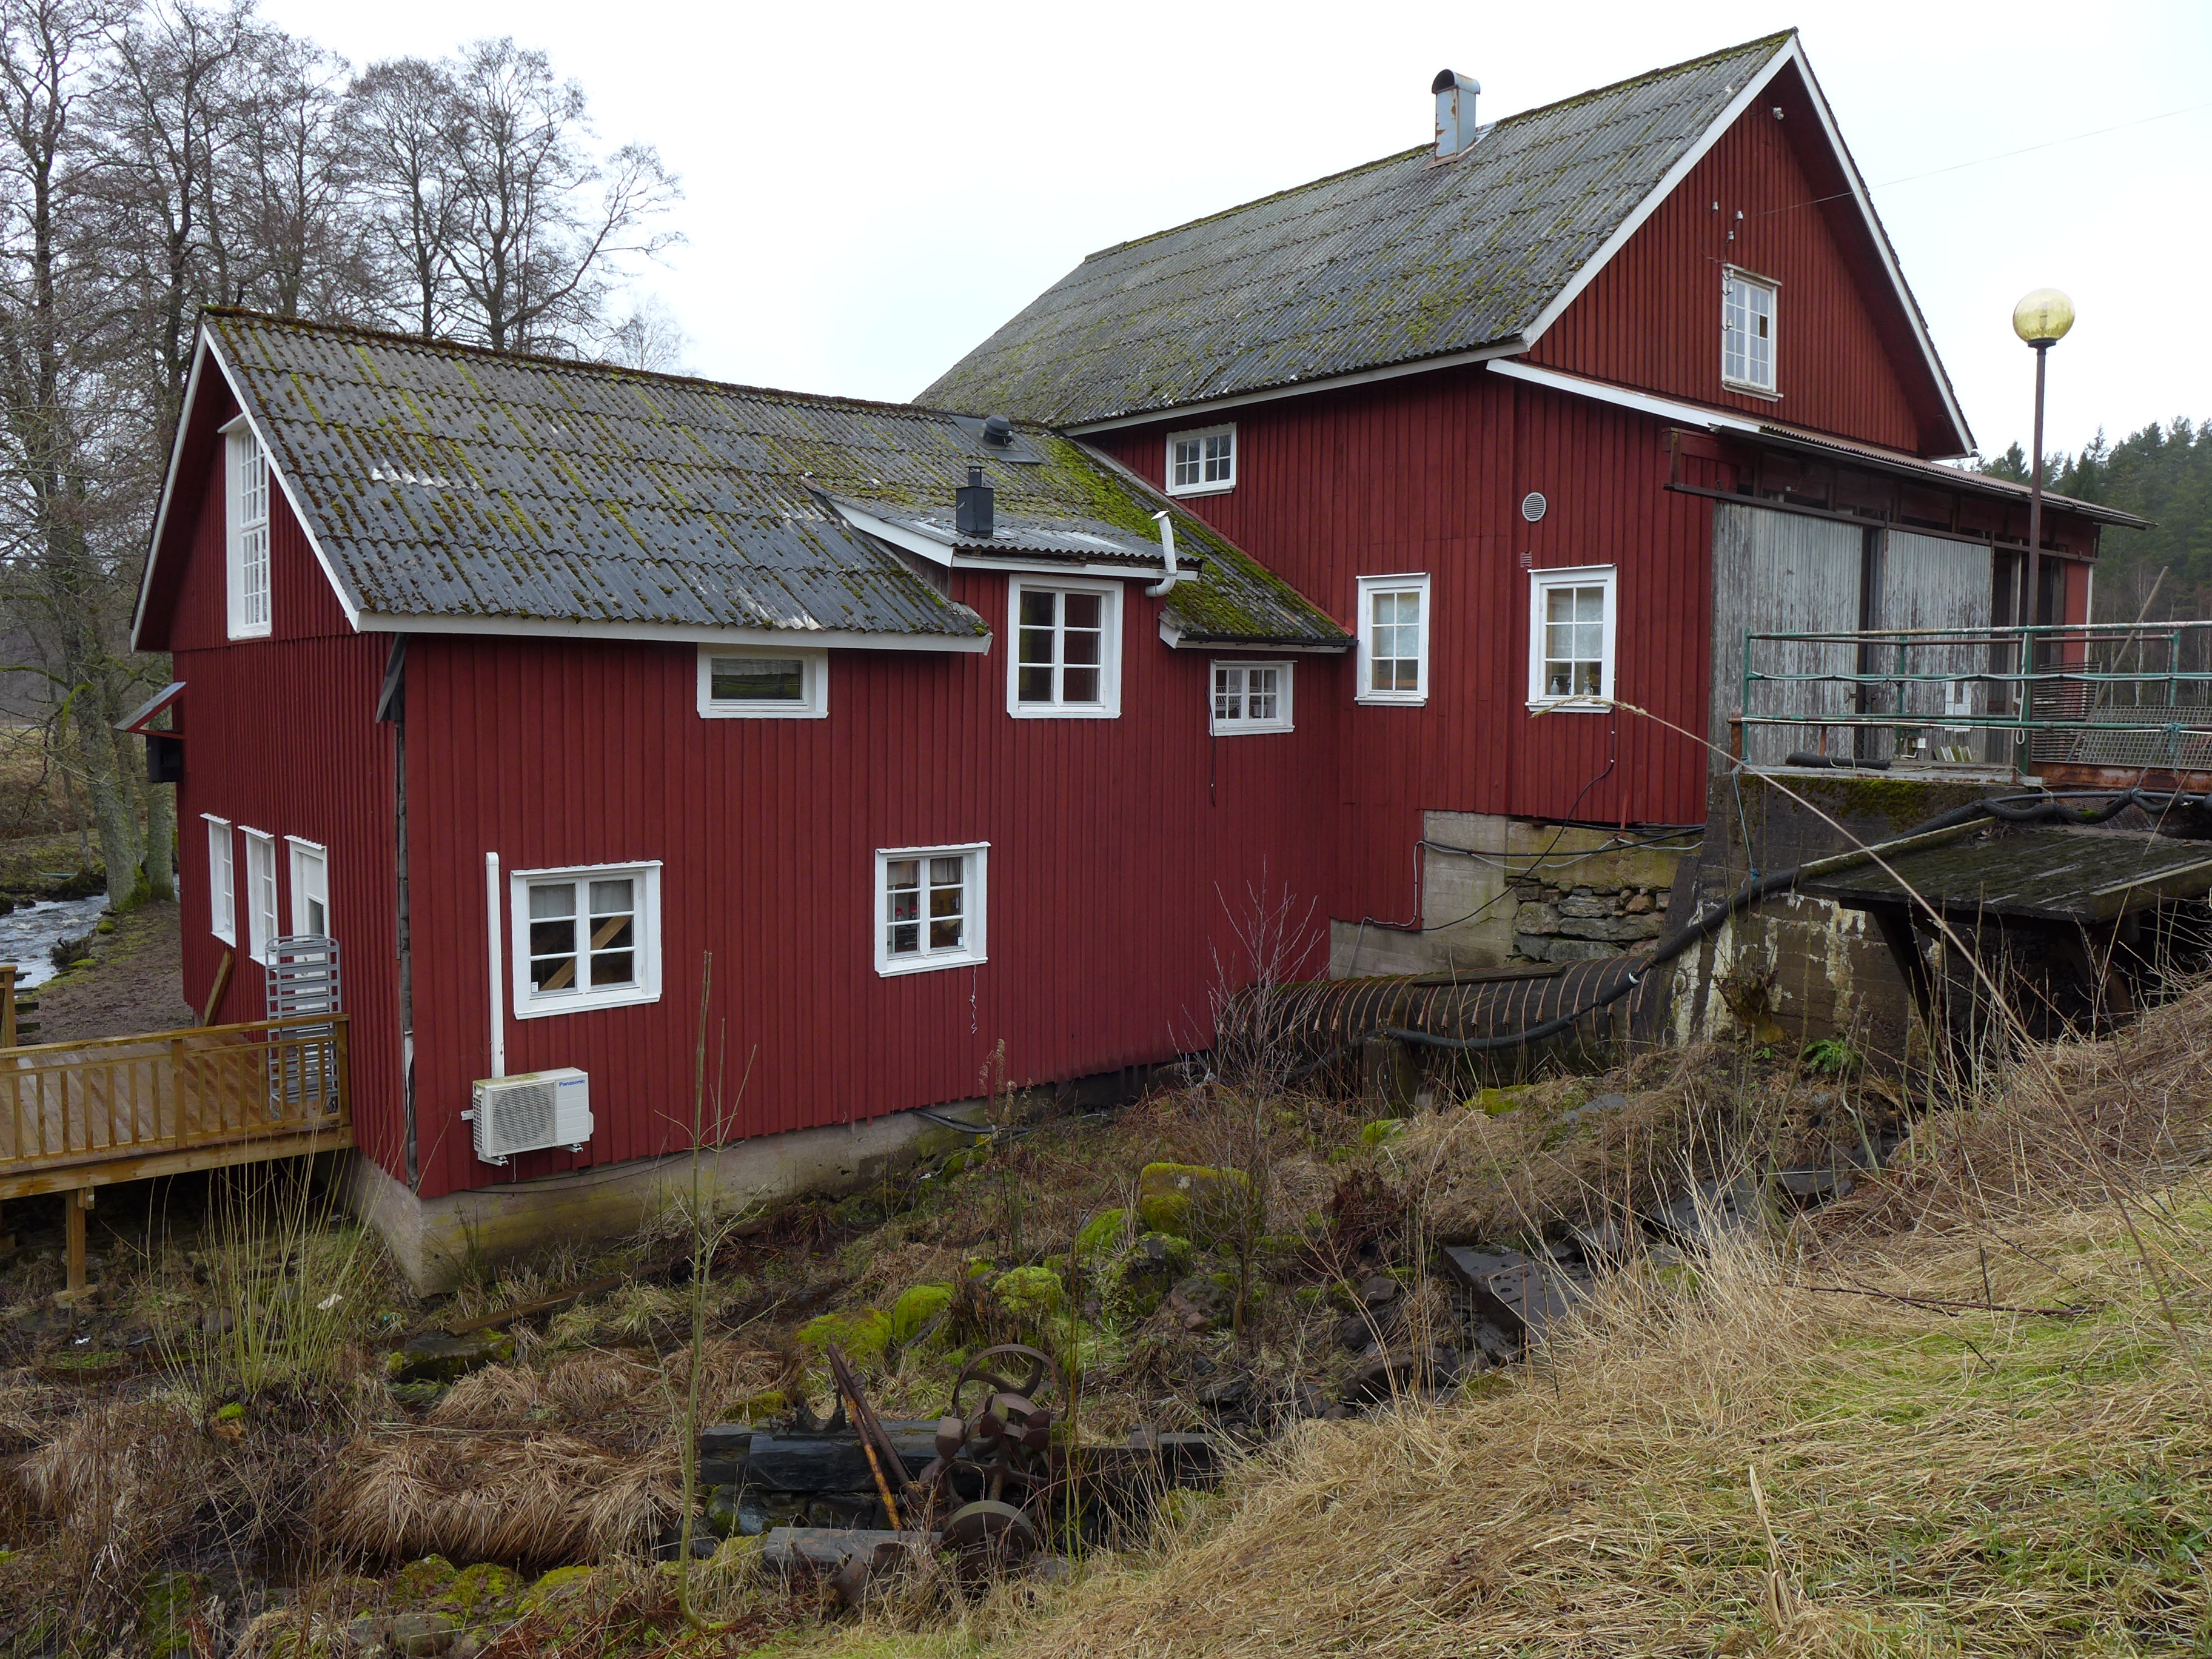 Vänga kvarn och tillhörande kraftverk får sin kraft från Säveån. Nuvarande kvarn uppfördes 1860. Den har sedan dess genomgått ett antal om- och tillbyggnader. Kvarnen förvaltas av hembygdsföreningen. Den är i drift och där bedrivs även kaféverksamhet.
